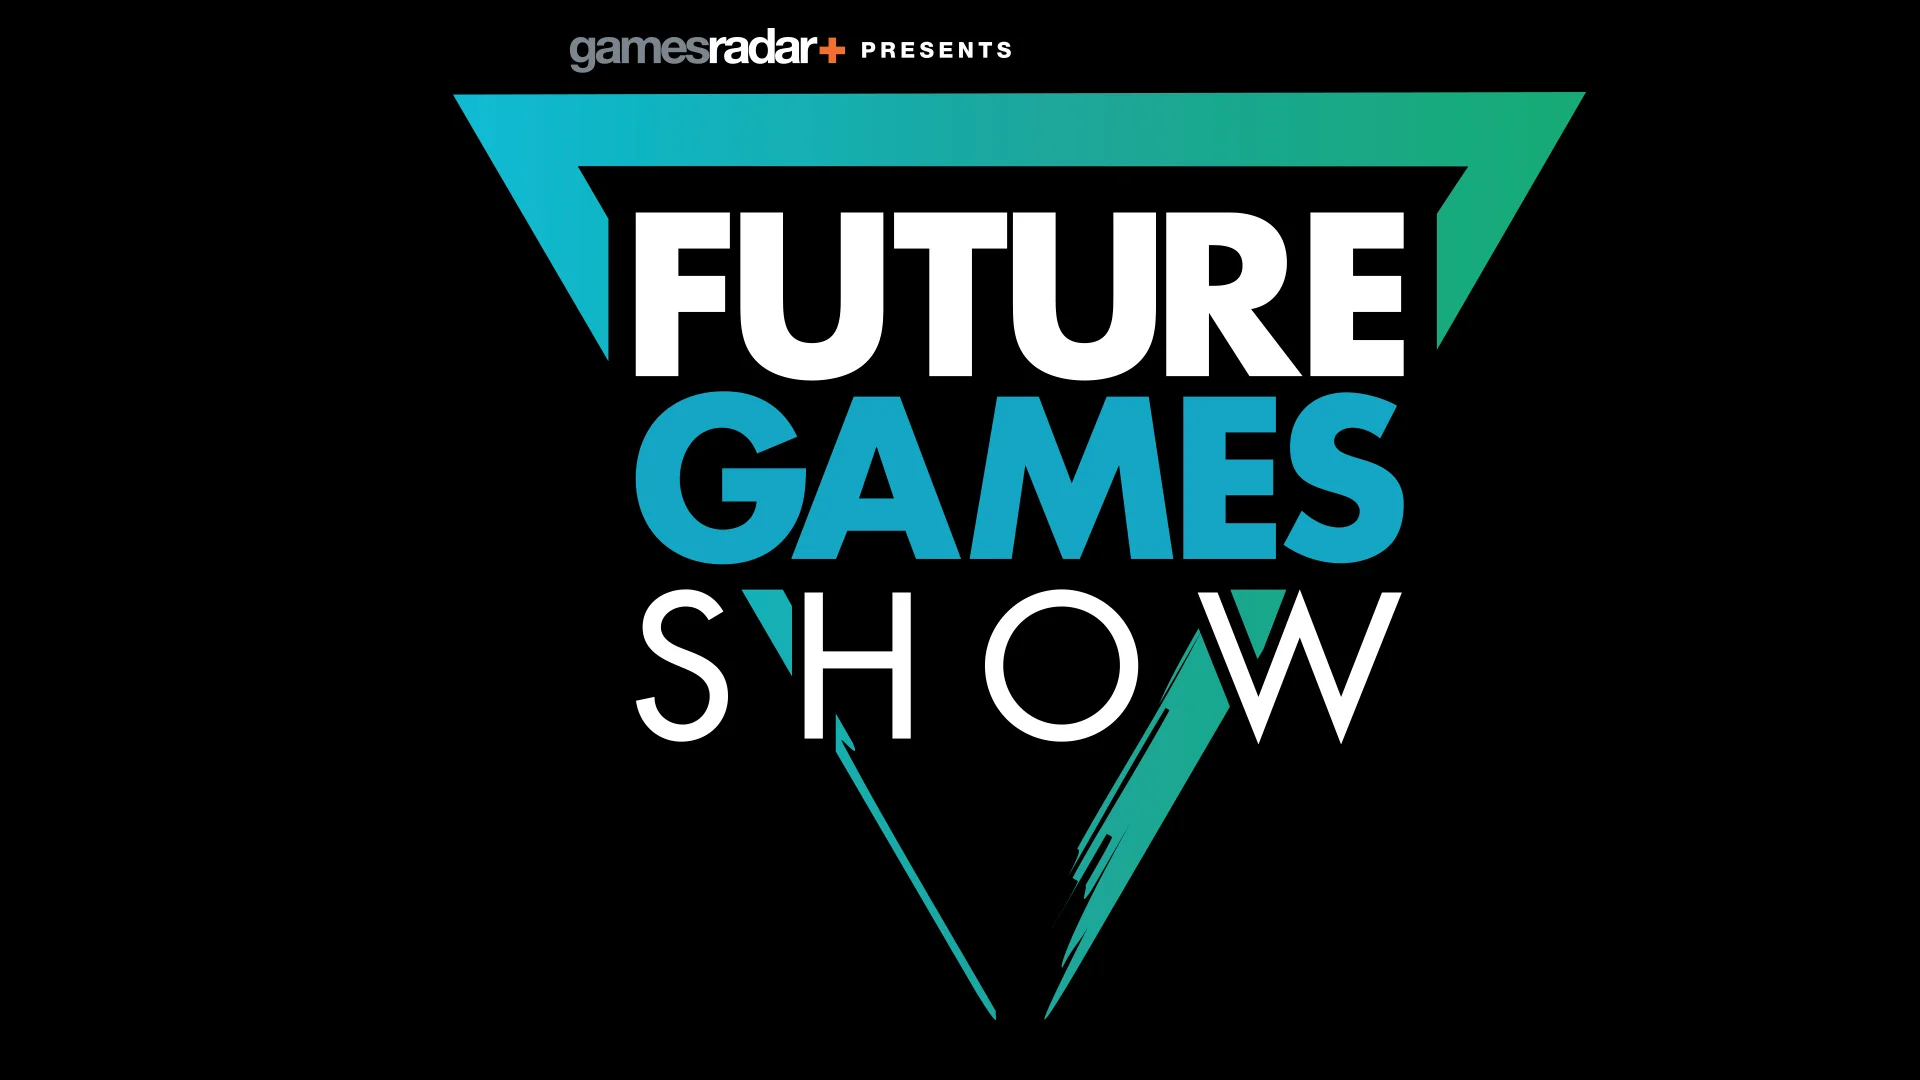 Future Games Show — это новая конференция издания GamesRadar+, на которой представят более 40 новых игр для консолей, ПК и мобильных устройств. В конференции, среди прочих, примут участие Square Enix, Team 17, tinyBuild, Raw Fury и Devolver Digital. 